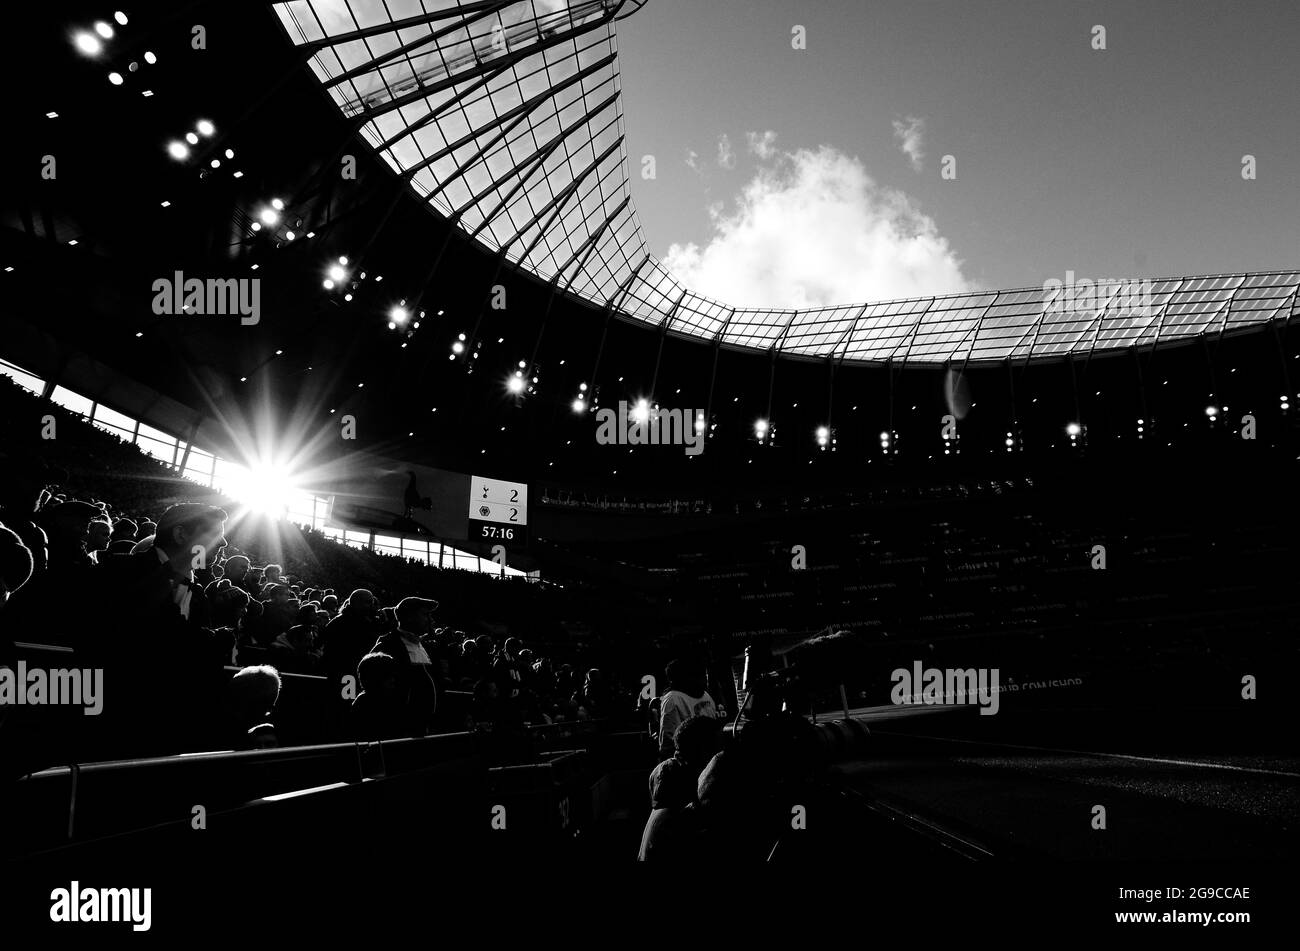 LONDRES, ANGLETERRE - 1er mars 2020 : silhouettes de fans dans les stands du lieu photographiés lors du match de la Premier League 2020/21 entre Tottenham Hotspur FC et Wolverhampton FC au stade Tottenham Hotspur. Banque D'Images